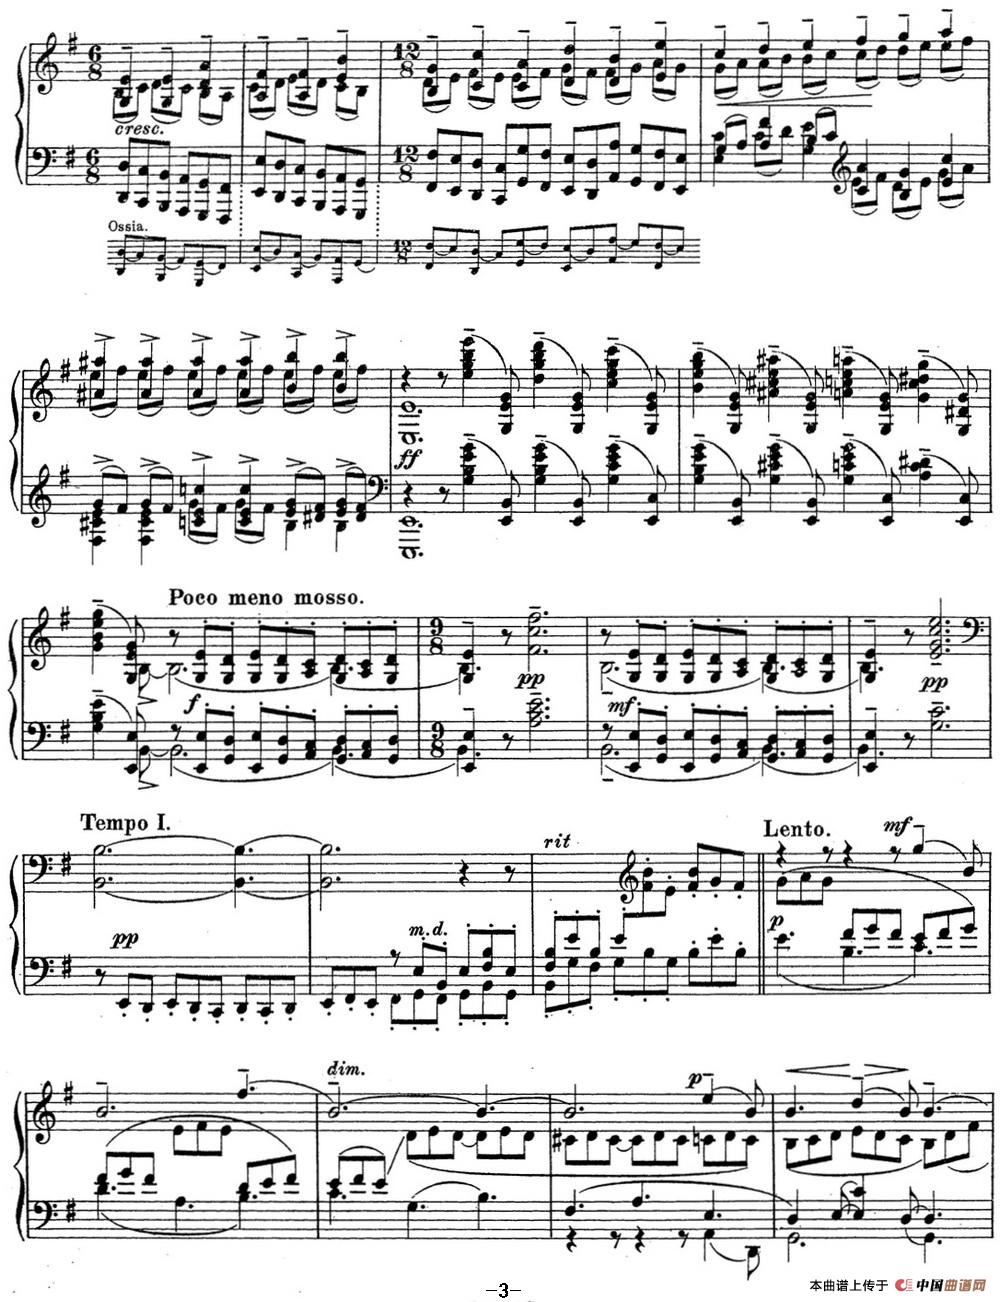 《拉赫玛尼诺夫 钢琴前奏曲15 E小调 Op.32 No.4》钢琴曲谱图分享